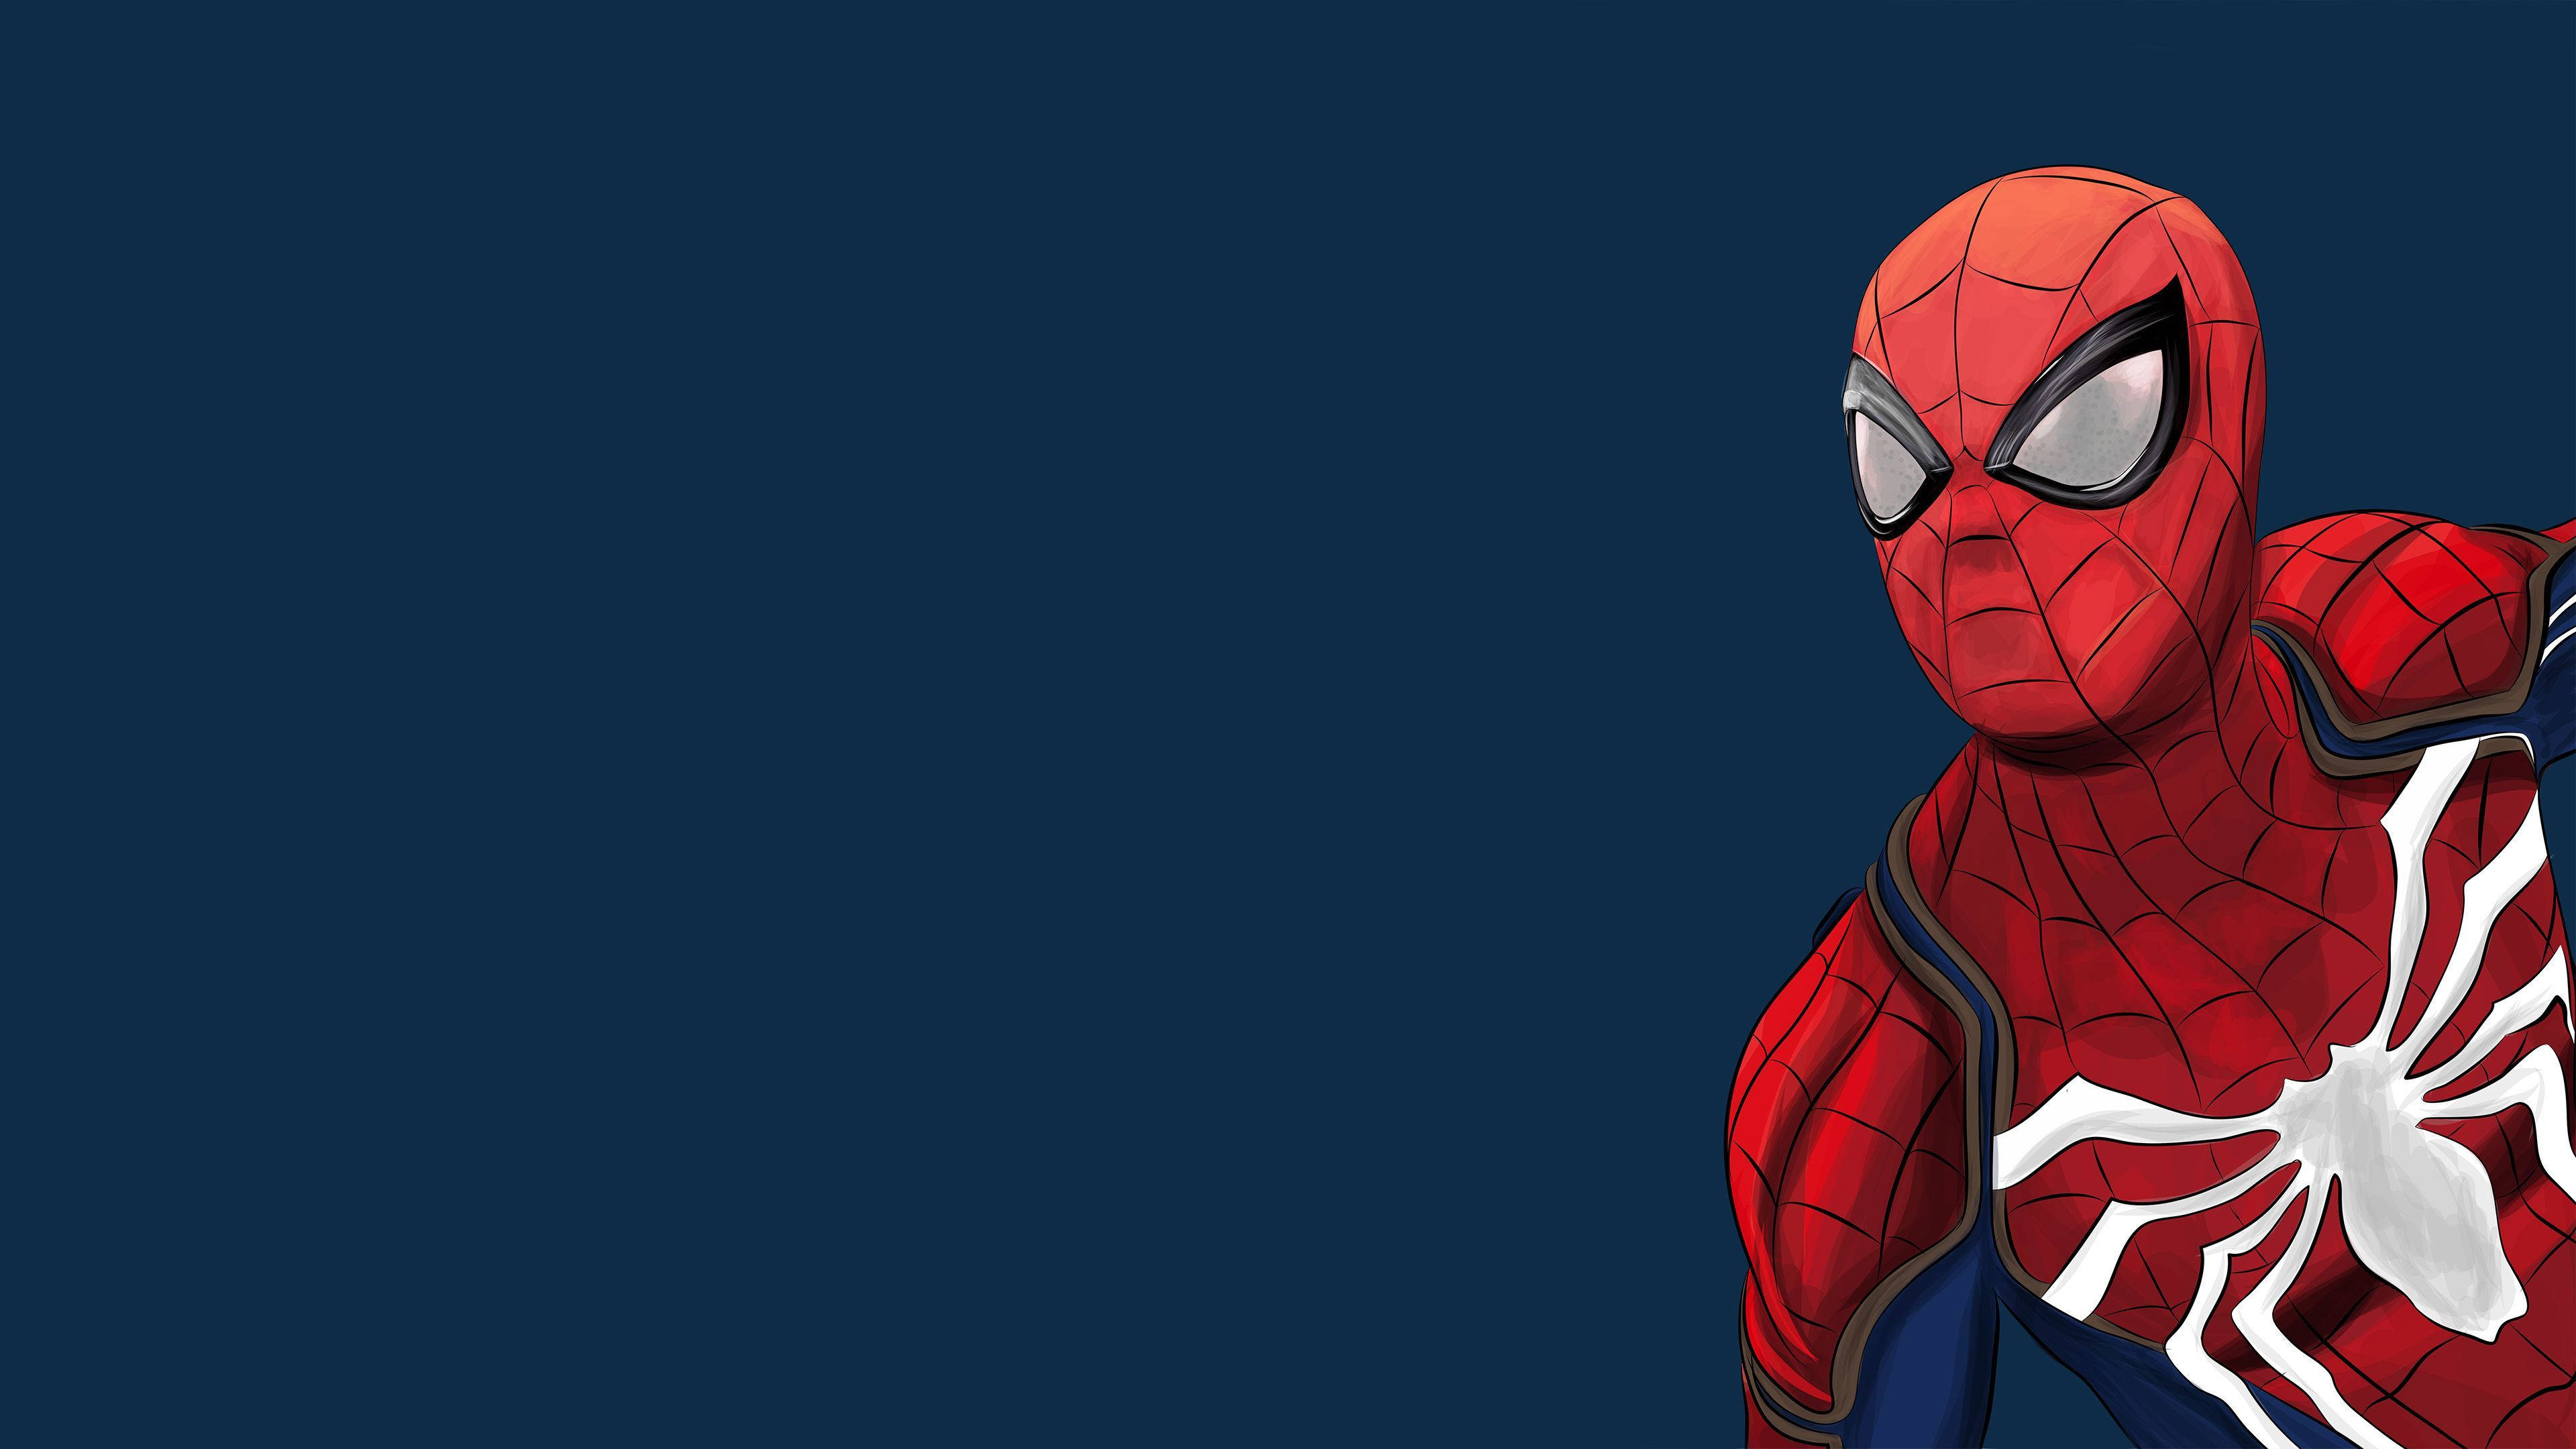 Hãy tải về bộ ảnh nền Spiderman Wallpaper để trang trí cho điện thoại hoặc máy tính của bạn. Thiết kế tuyệt đẹp và màu sắc tươi sáng sẽ khiến bạn không thể ngừng ngắm nhìn.